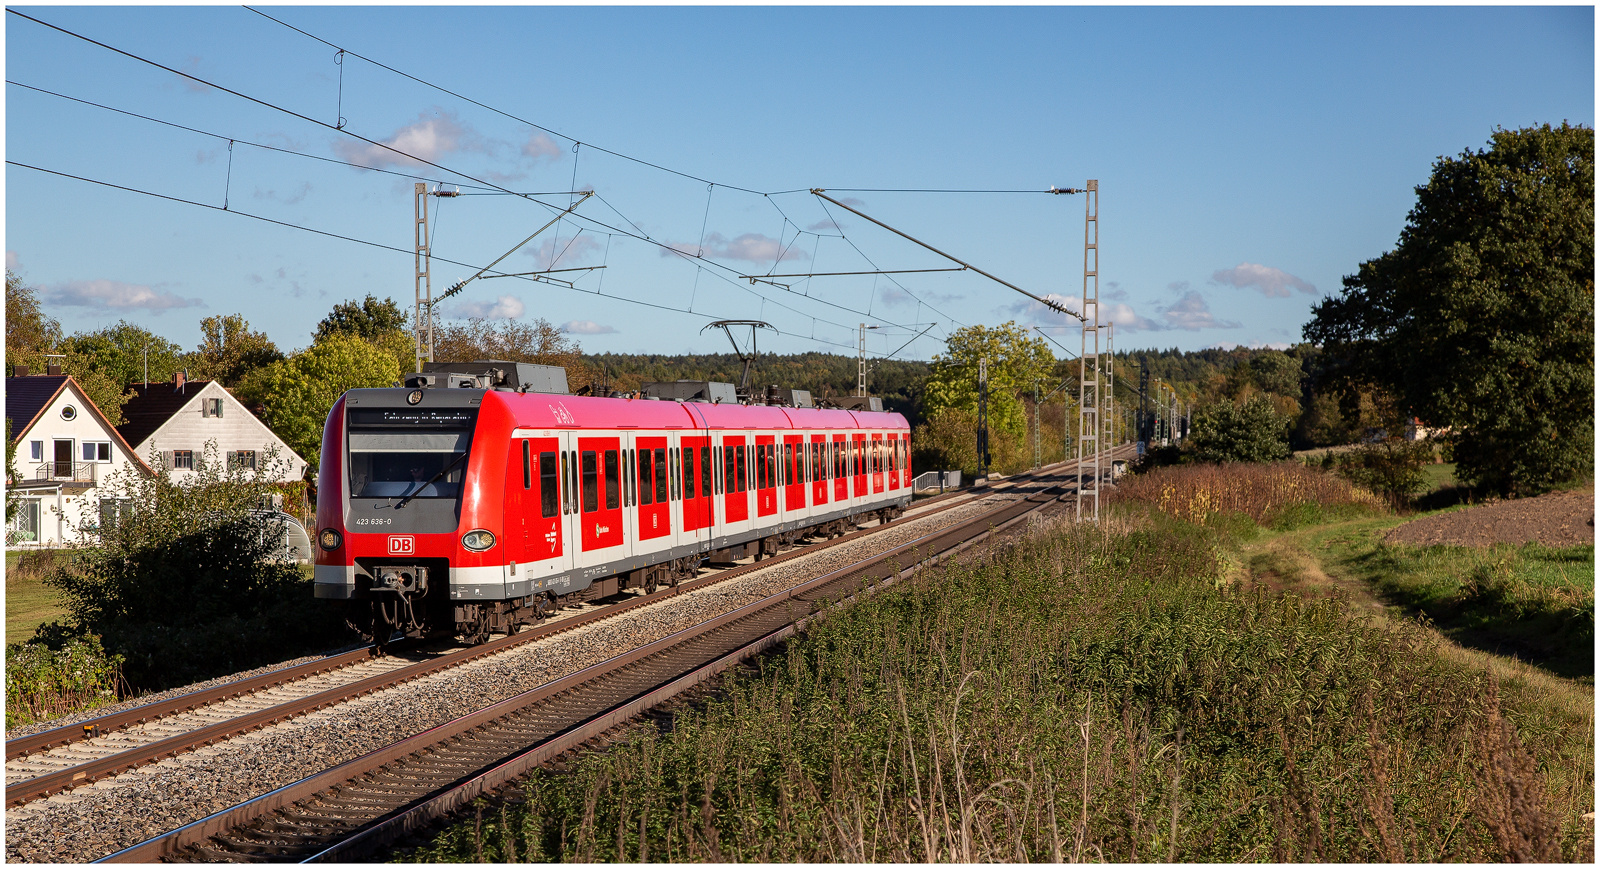 S-Bahn München auf Inspektionsfahrt